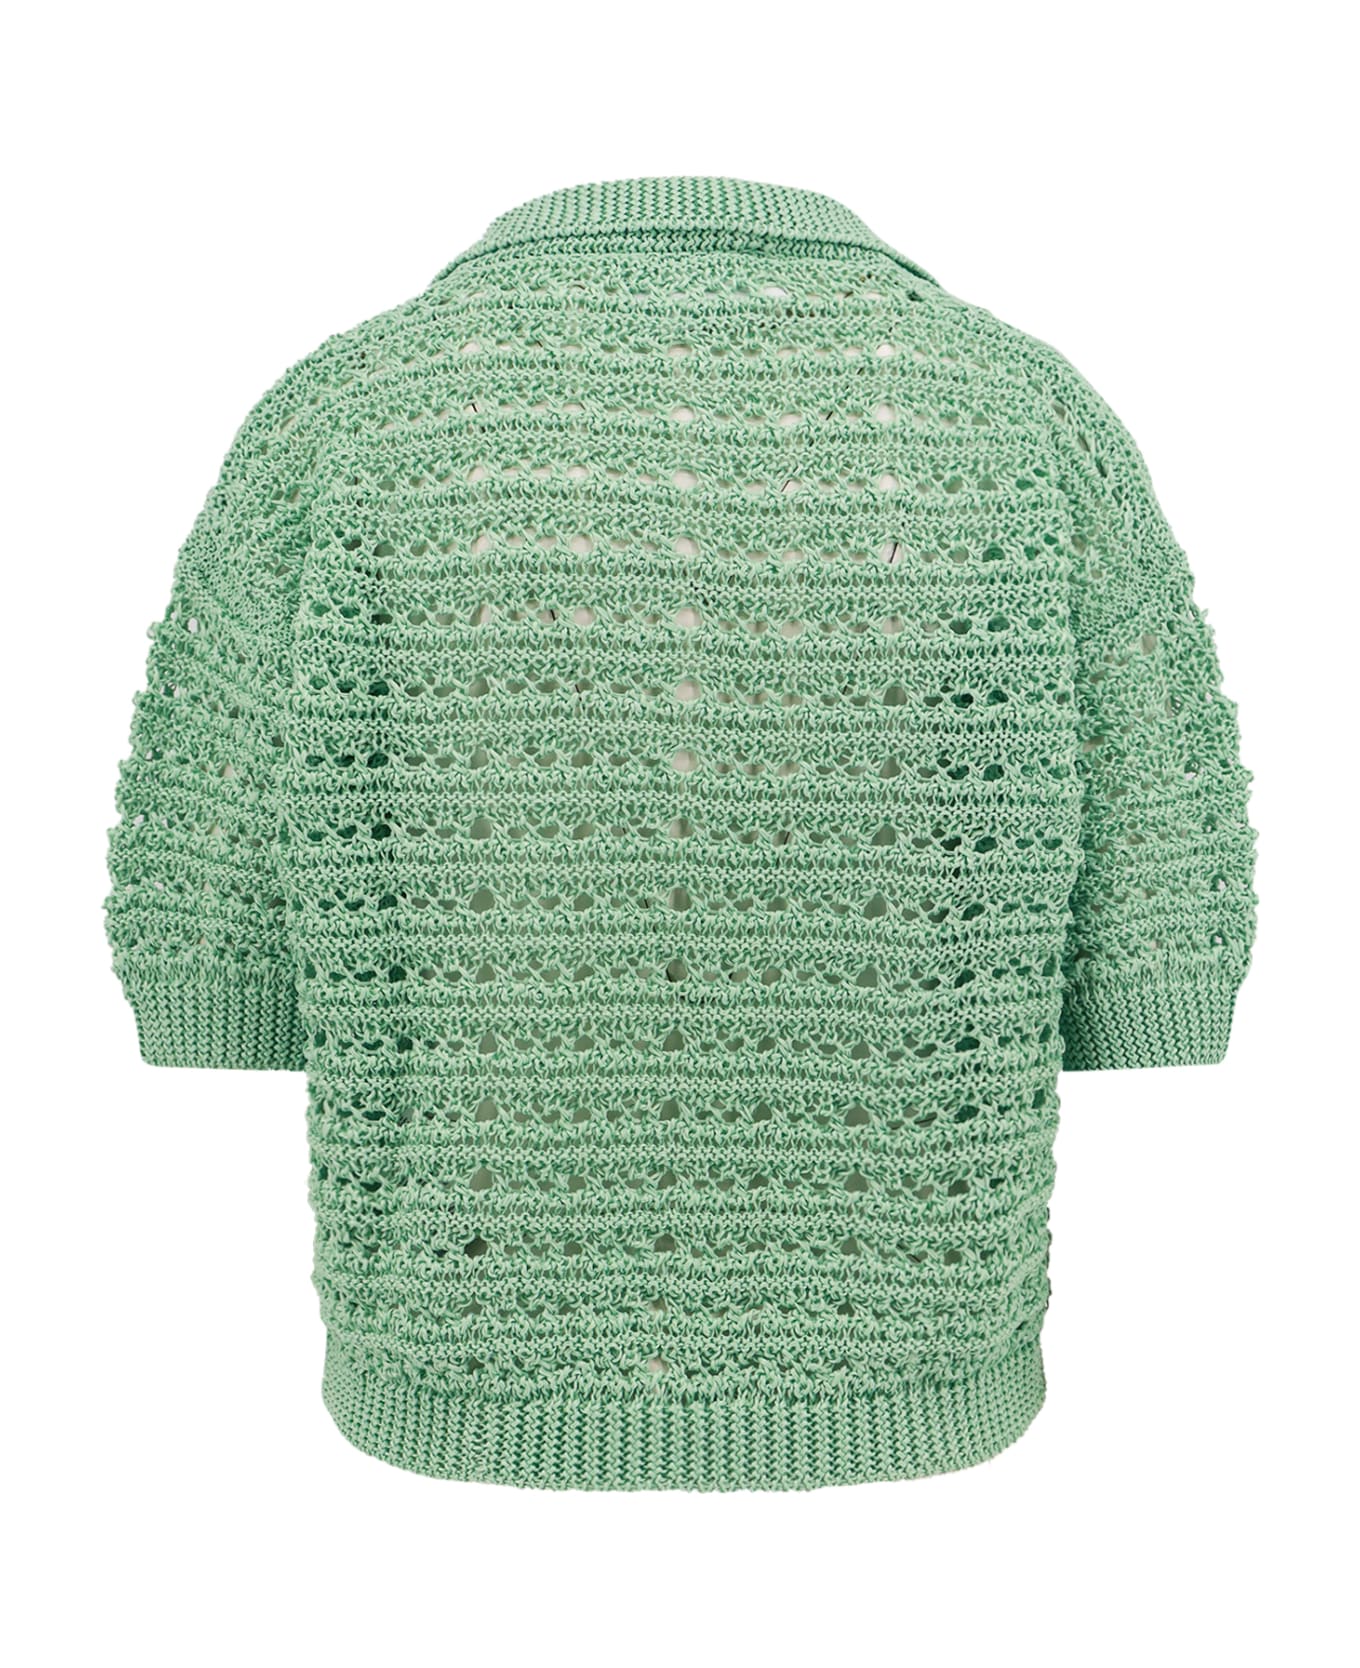 Erika Cavallini Sweater - Green ニットウェア